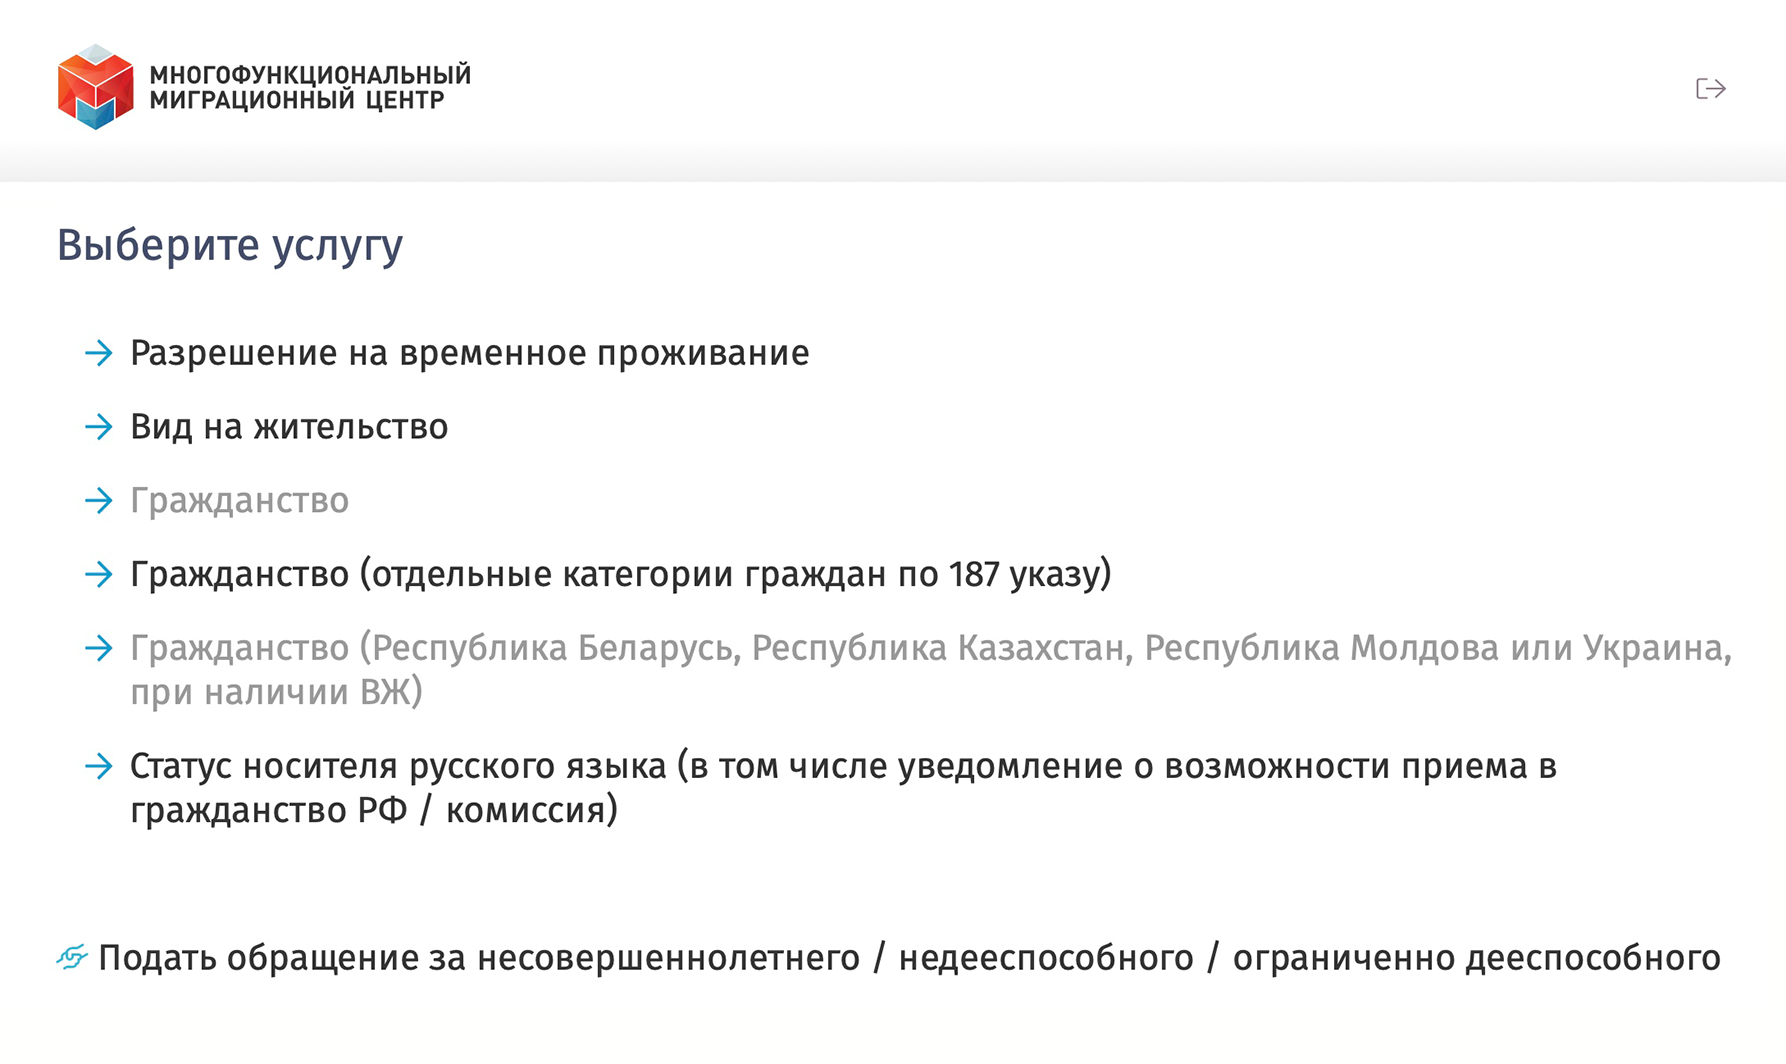 Сейчас можно получить гражданство в упрощенном порядке просто потому, что вы носитель русского языка. Но в ноябре 2021 года такой возможности не было